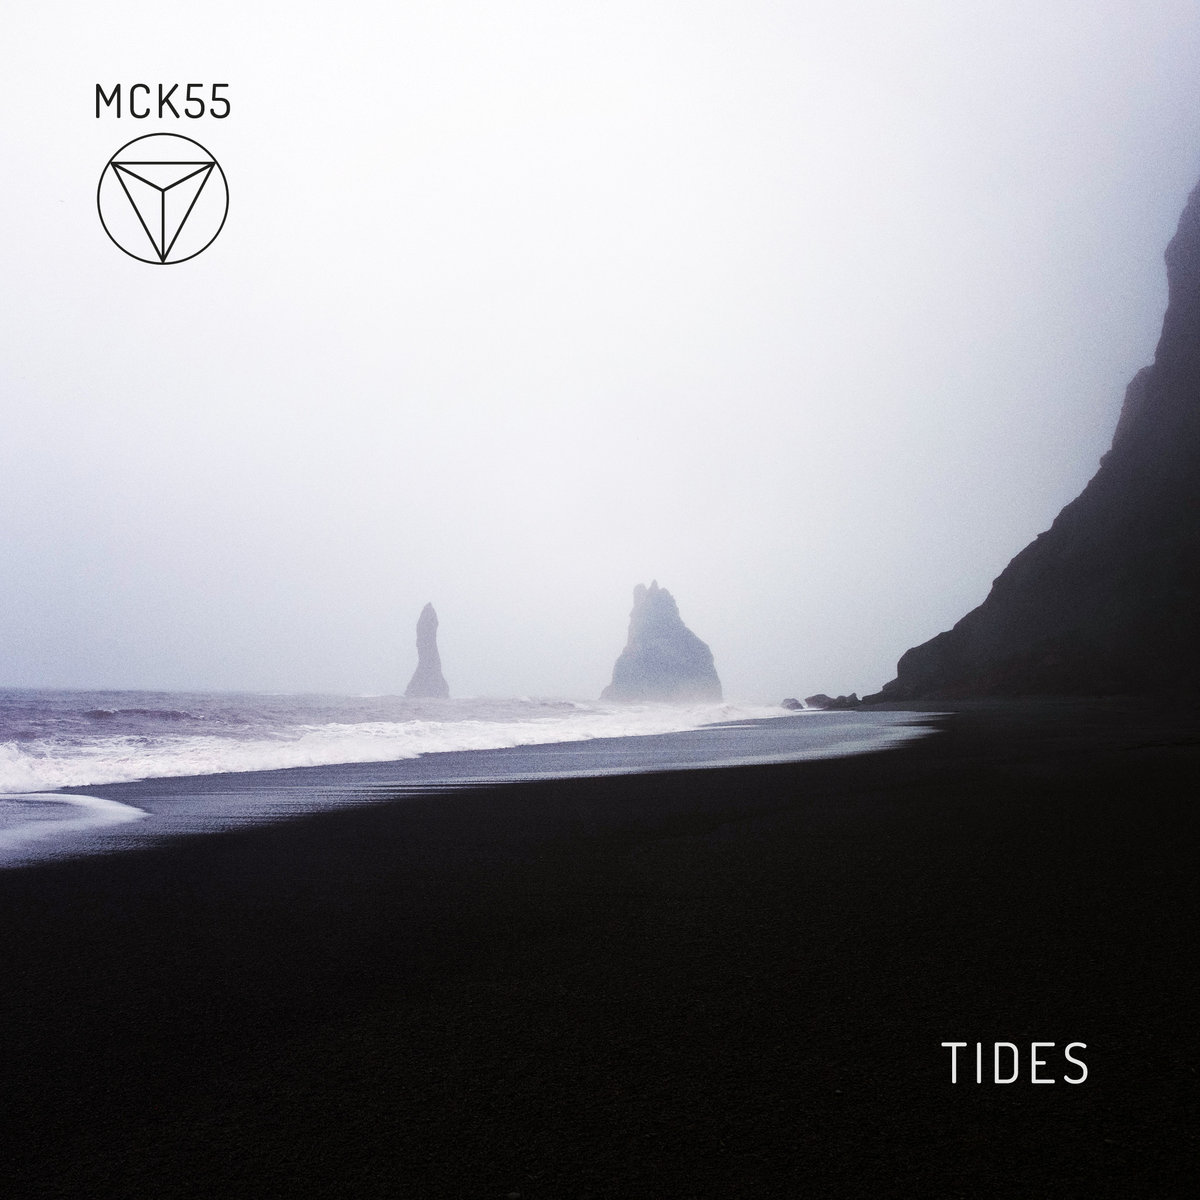 Tides by MCK55